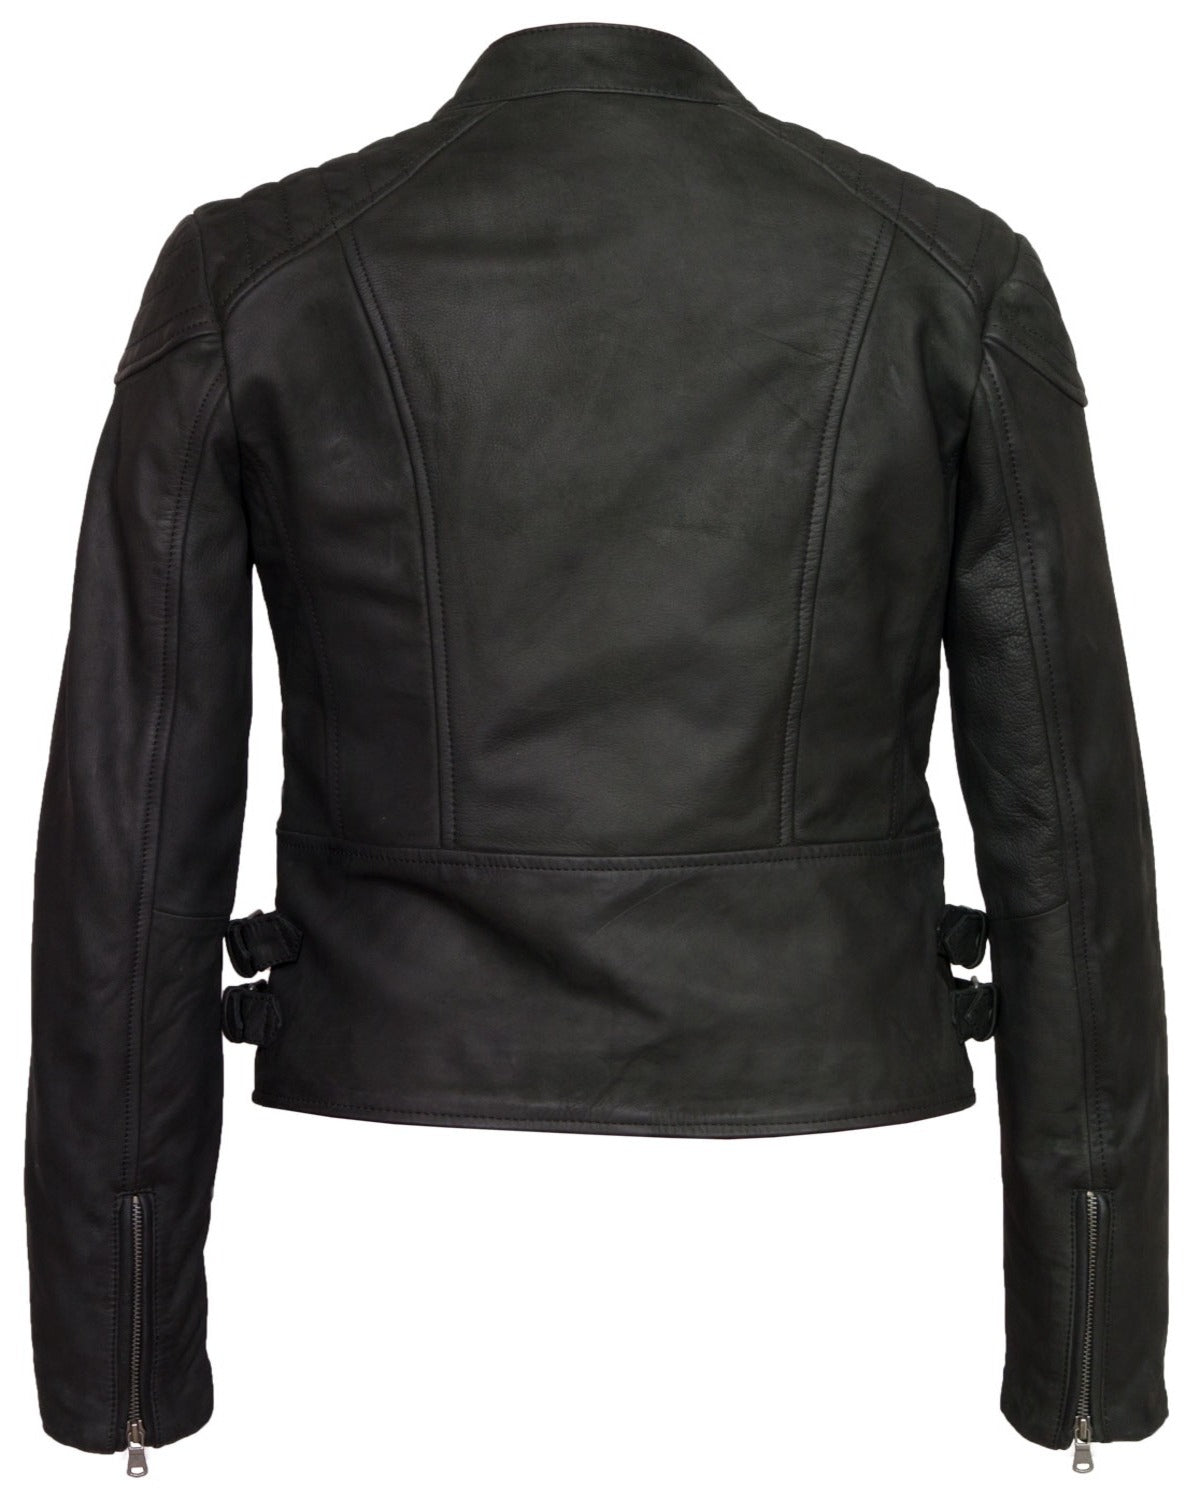 Elite Women’s Black Leather Biker Jacket